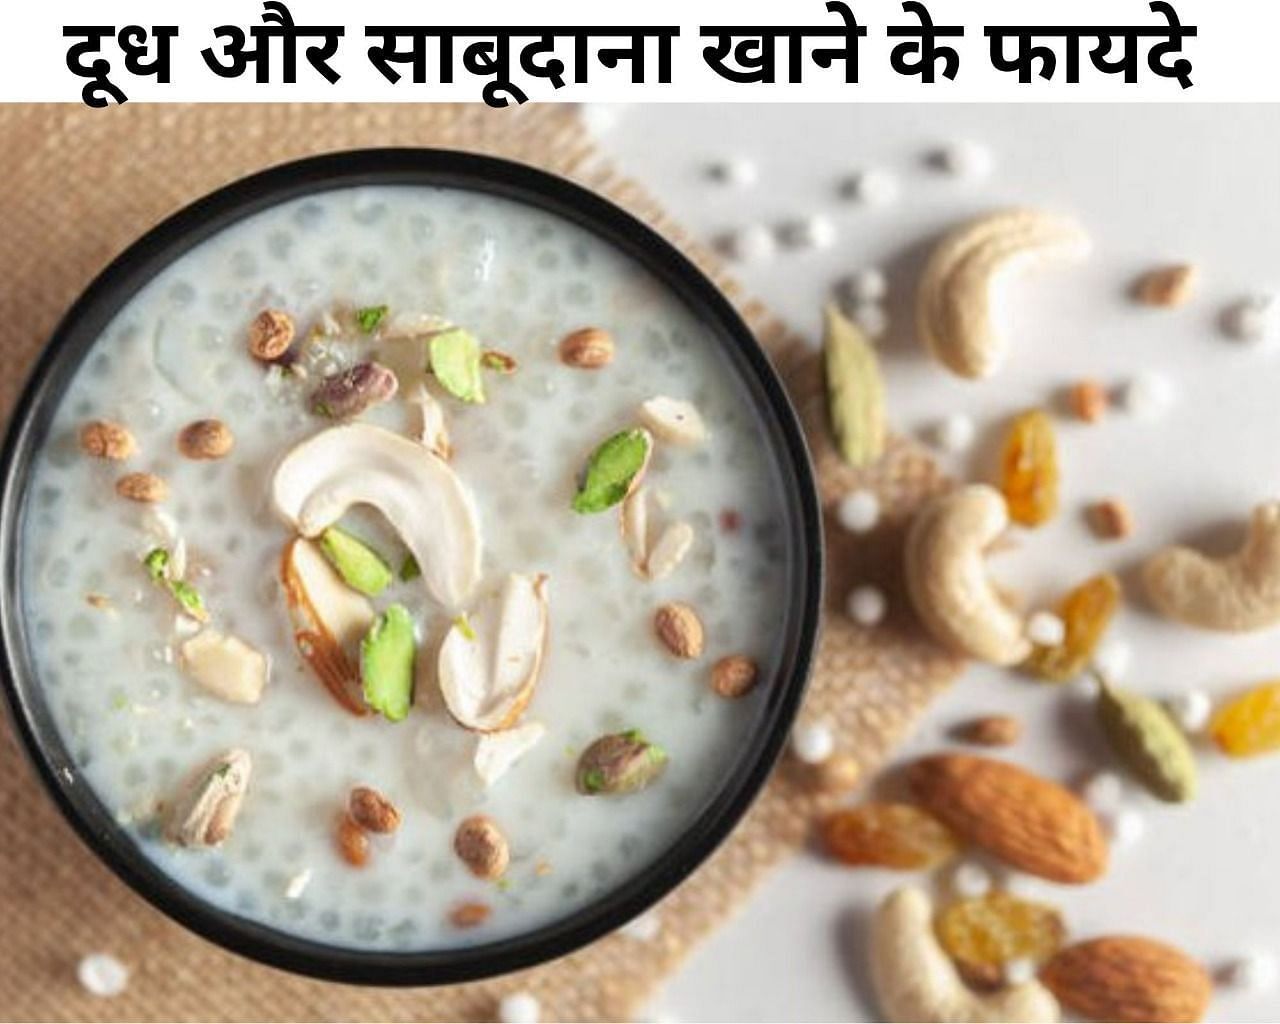 दूध और साबूदाना खाने के फायदे  (फोटो - sportskeeda hindi)